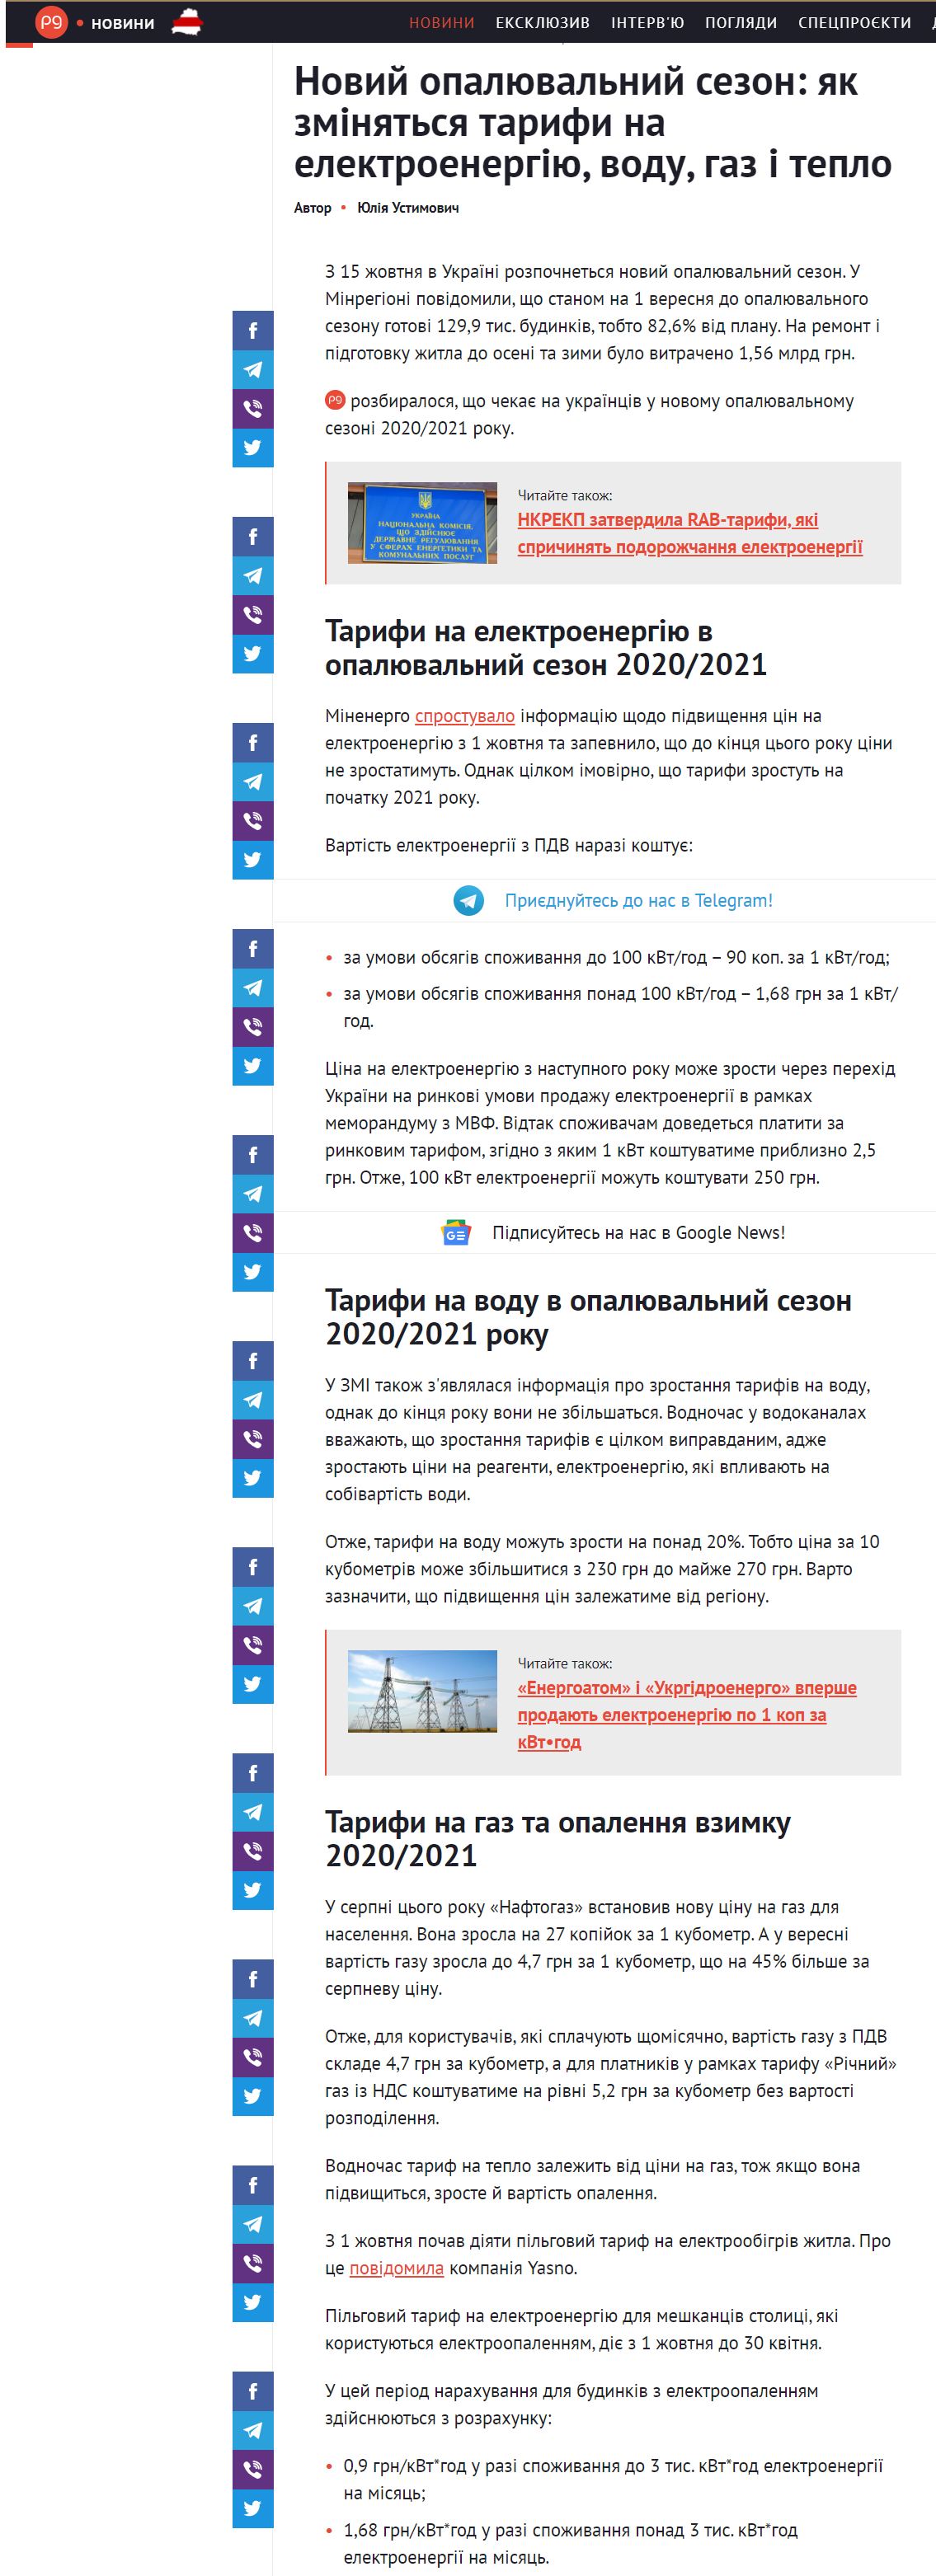 https://thepage.ua/ua/news/tarifi-na-elektroenergiyu-vodu-gaz-i-teplo-u-novomu-opalyuvalnomu-sezoni